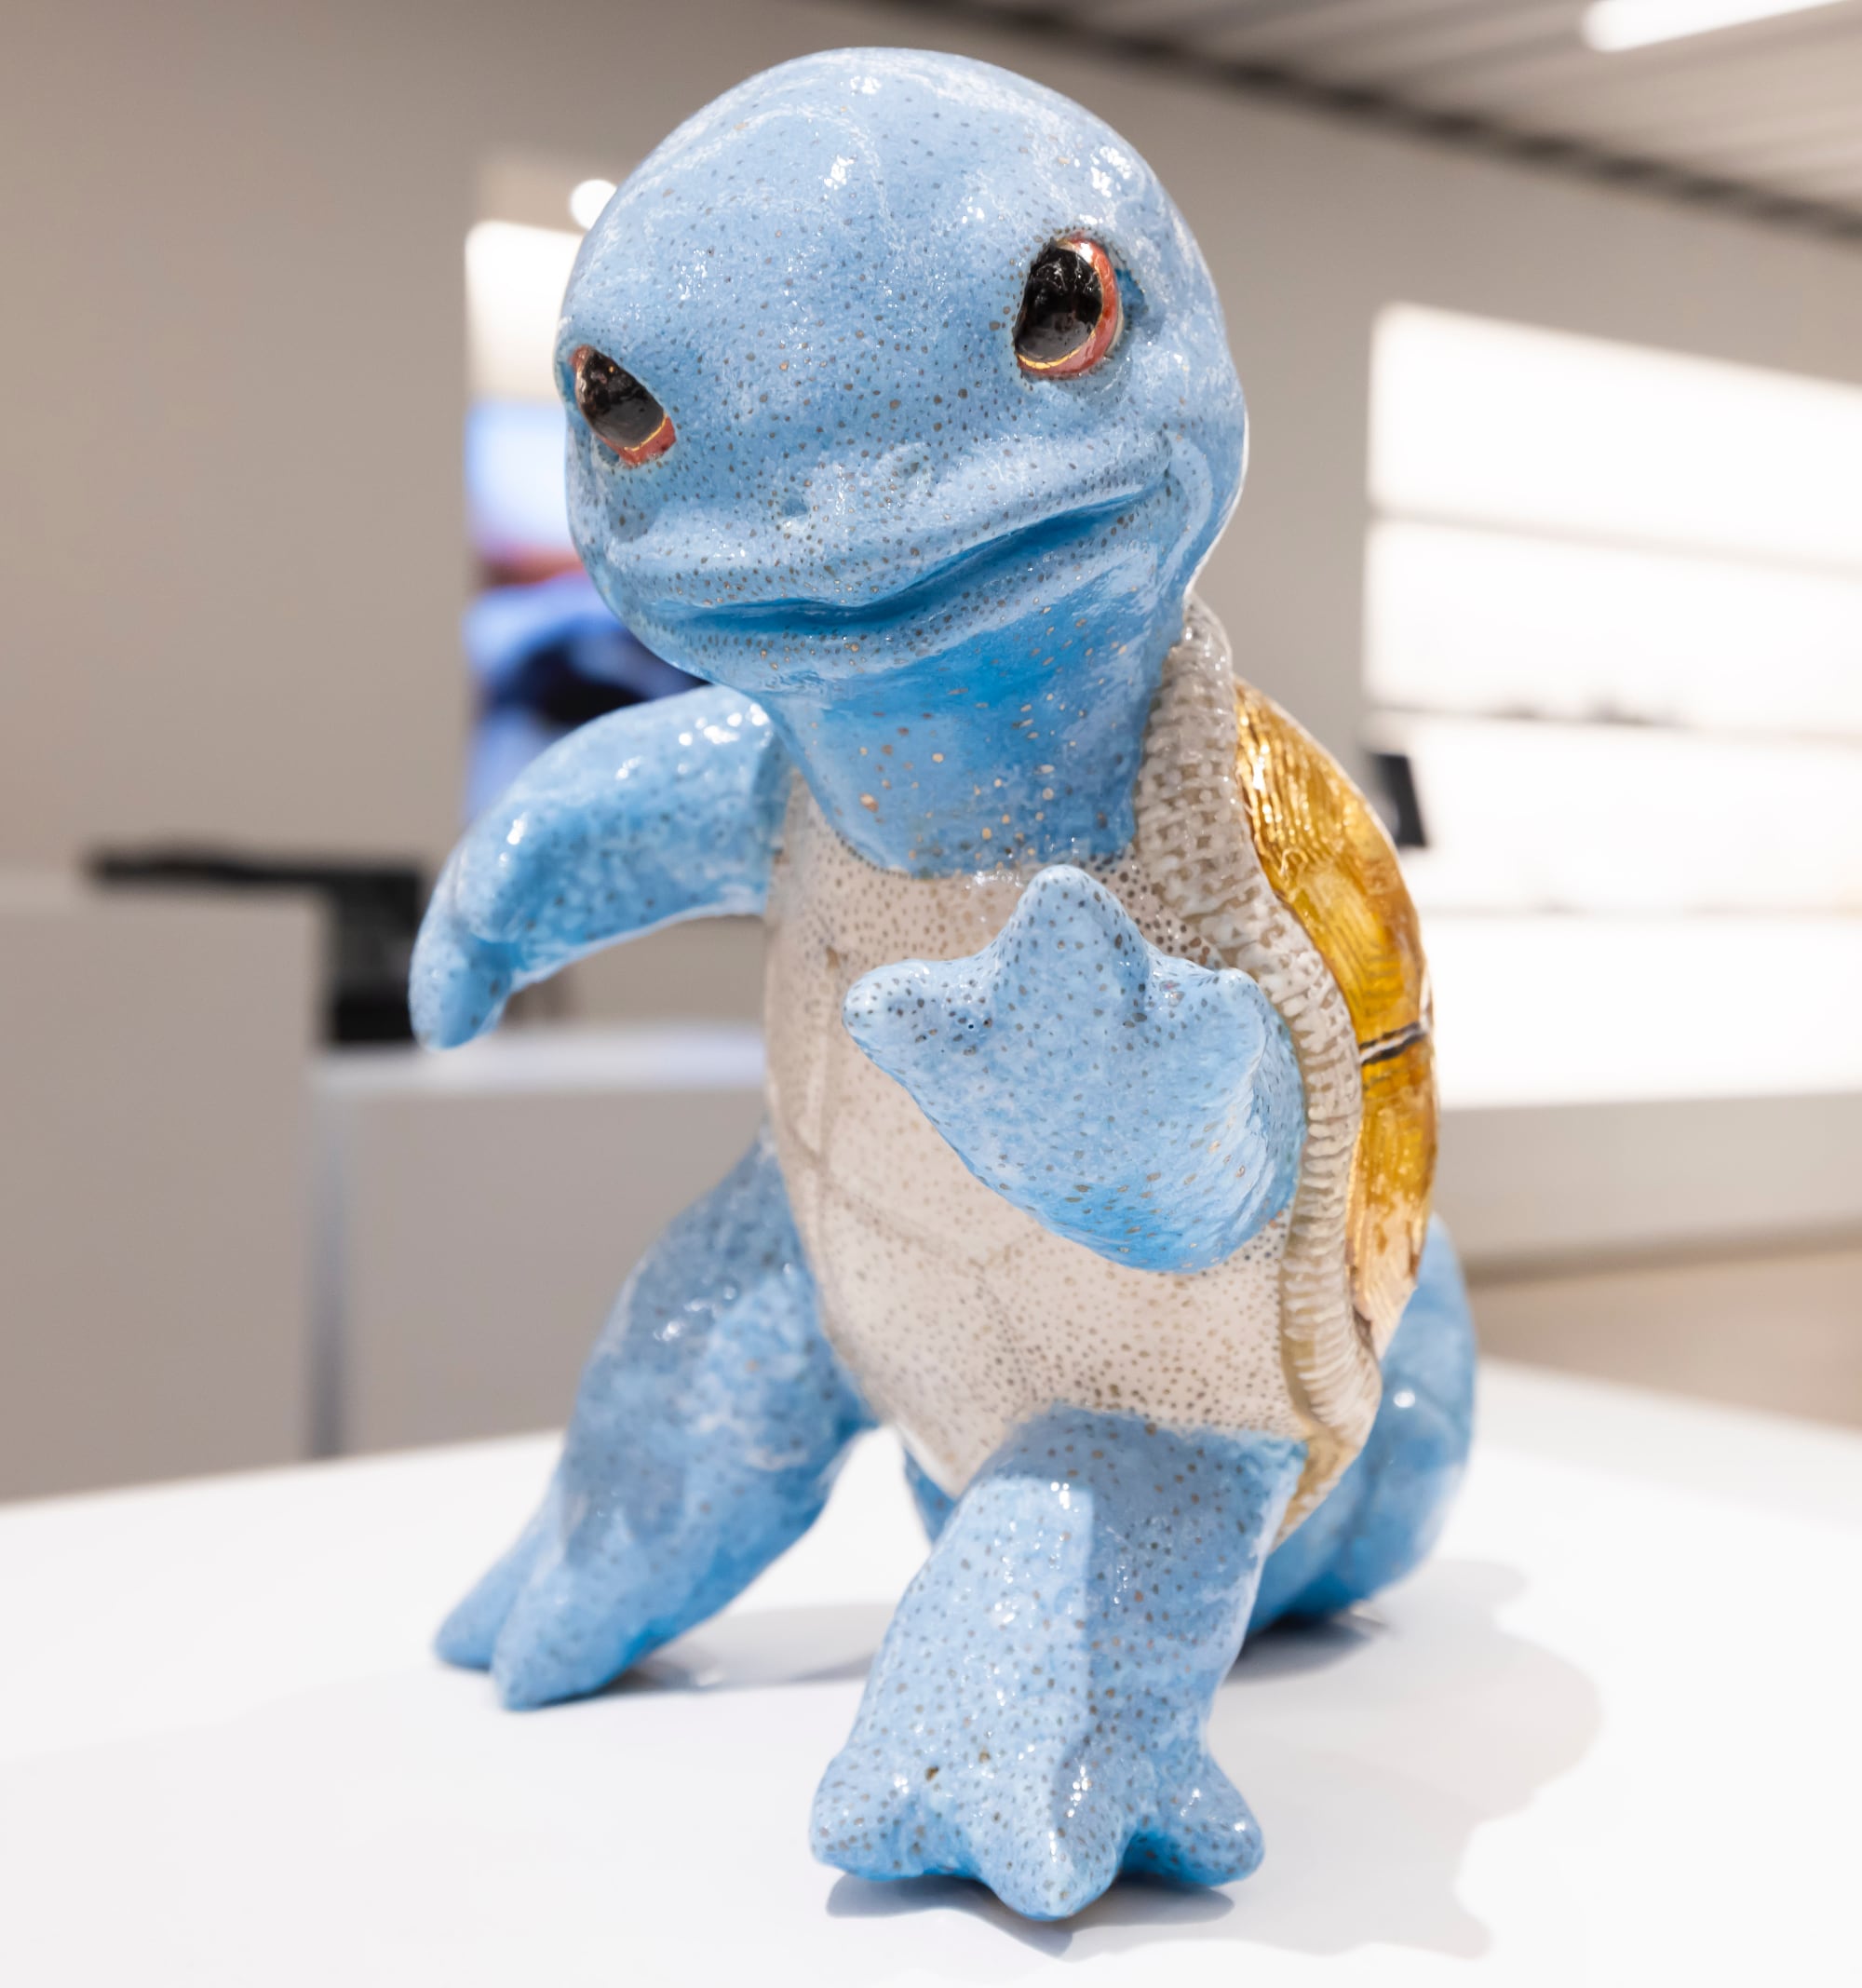 a ceramic sculpture of a blue turtle-squirrel hybrid